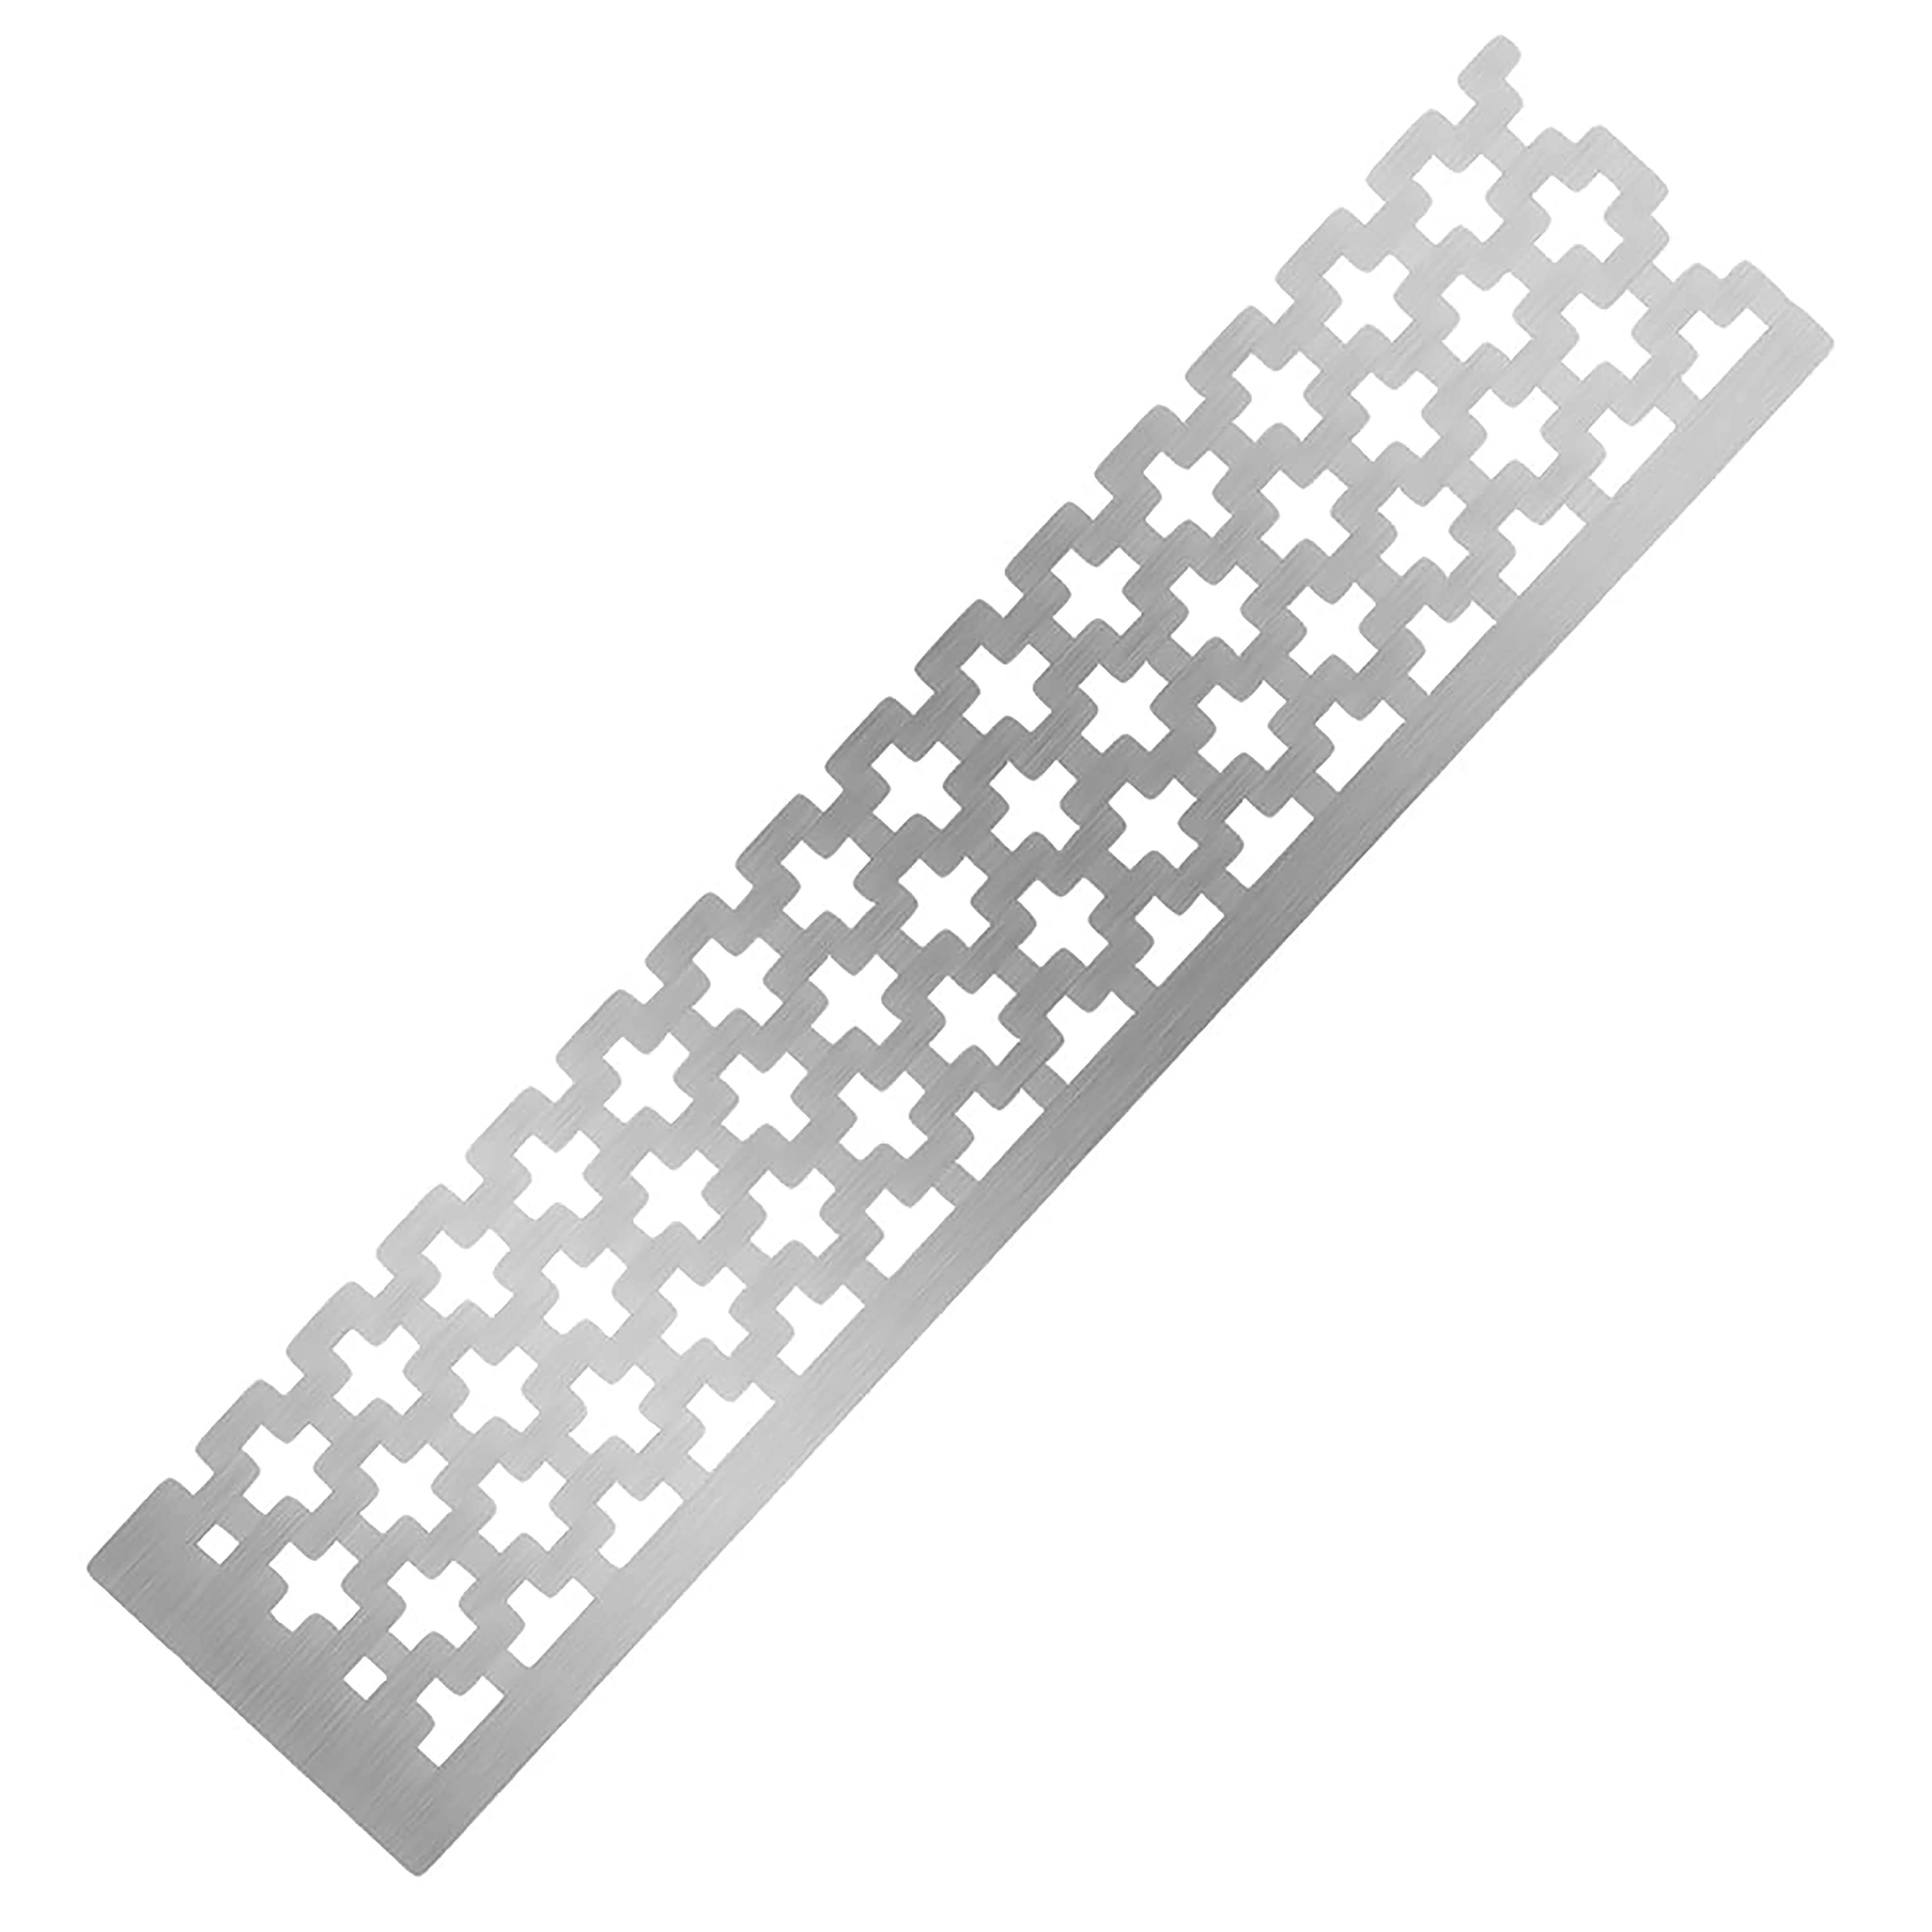 Diamond painting grid ruler experience? : r/diamondpainting